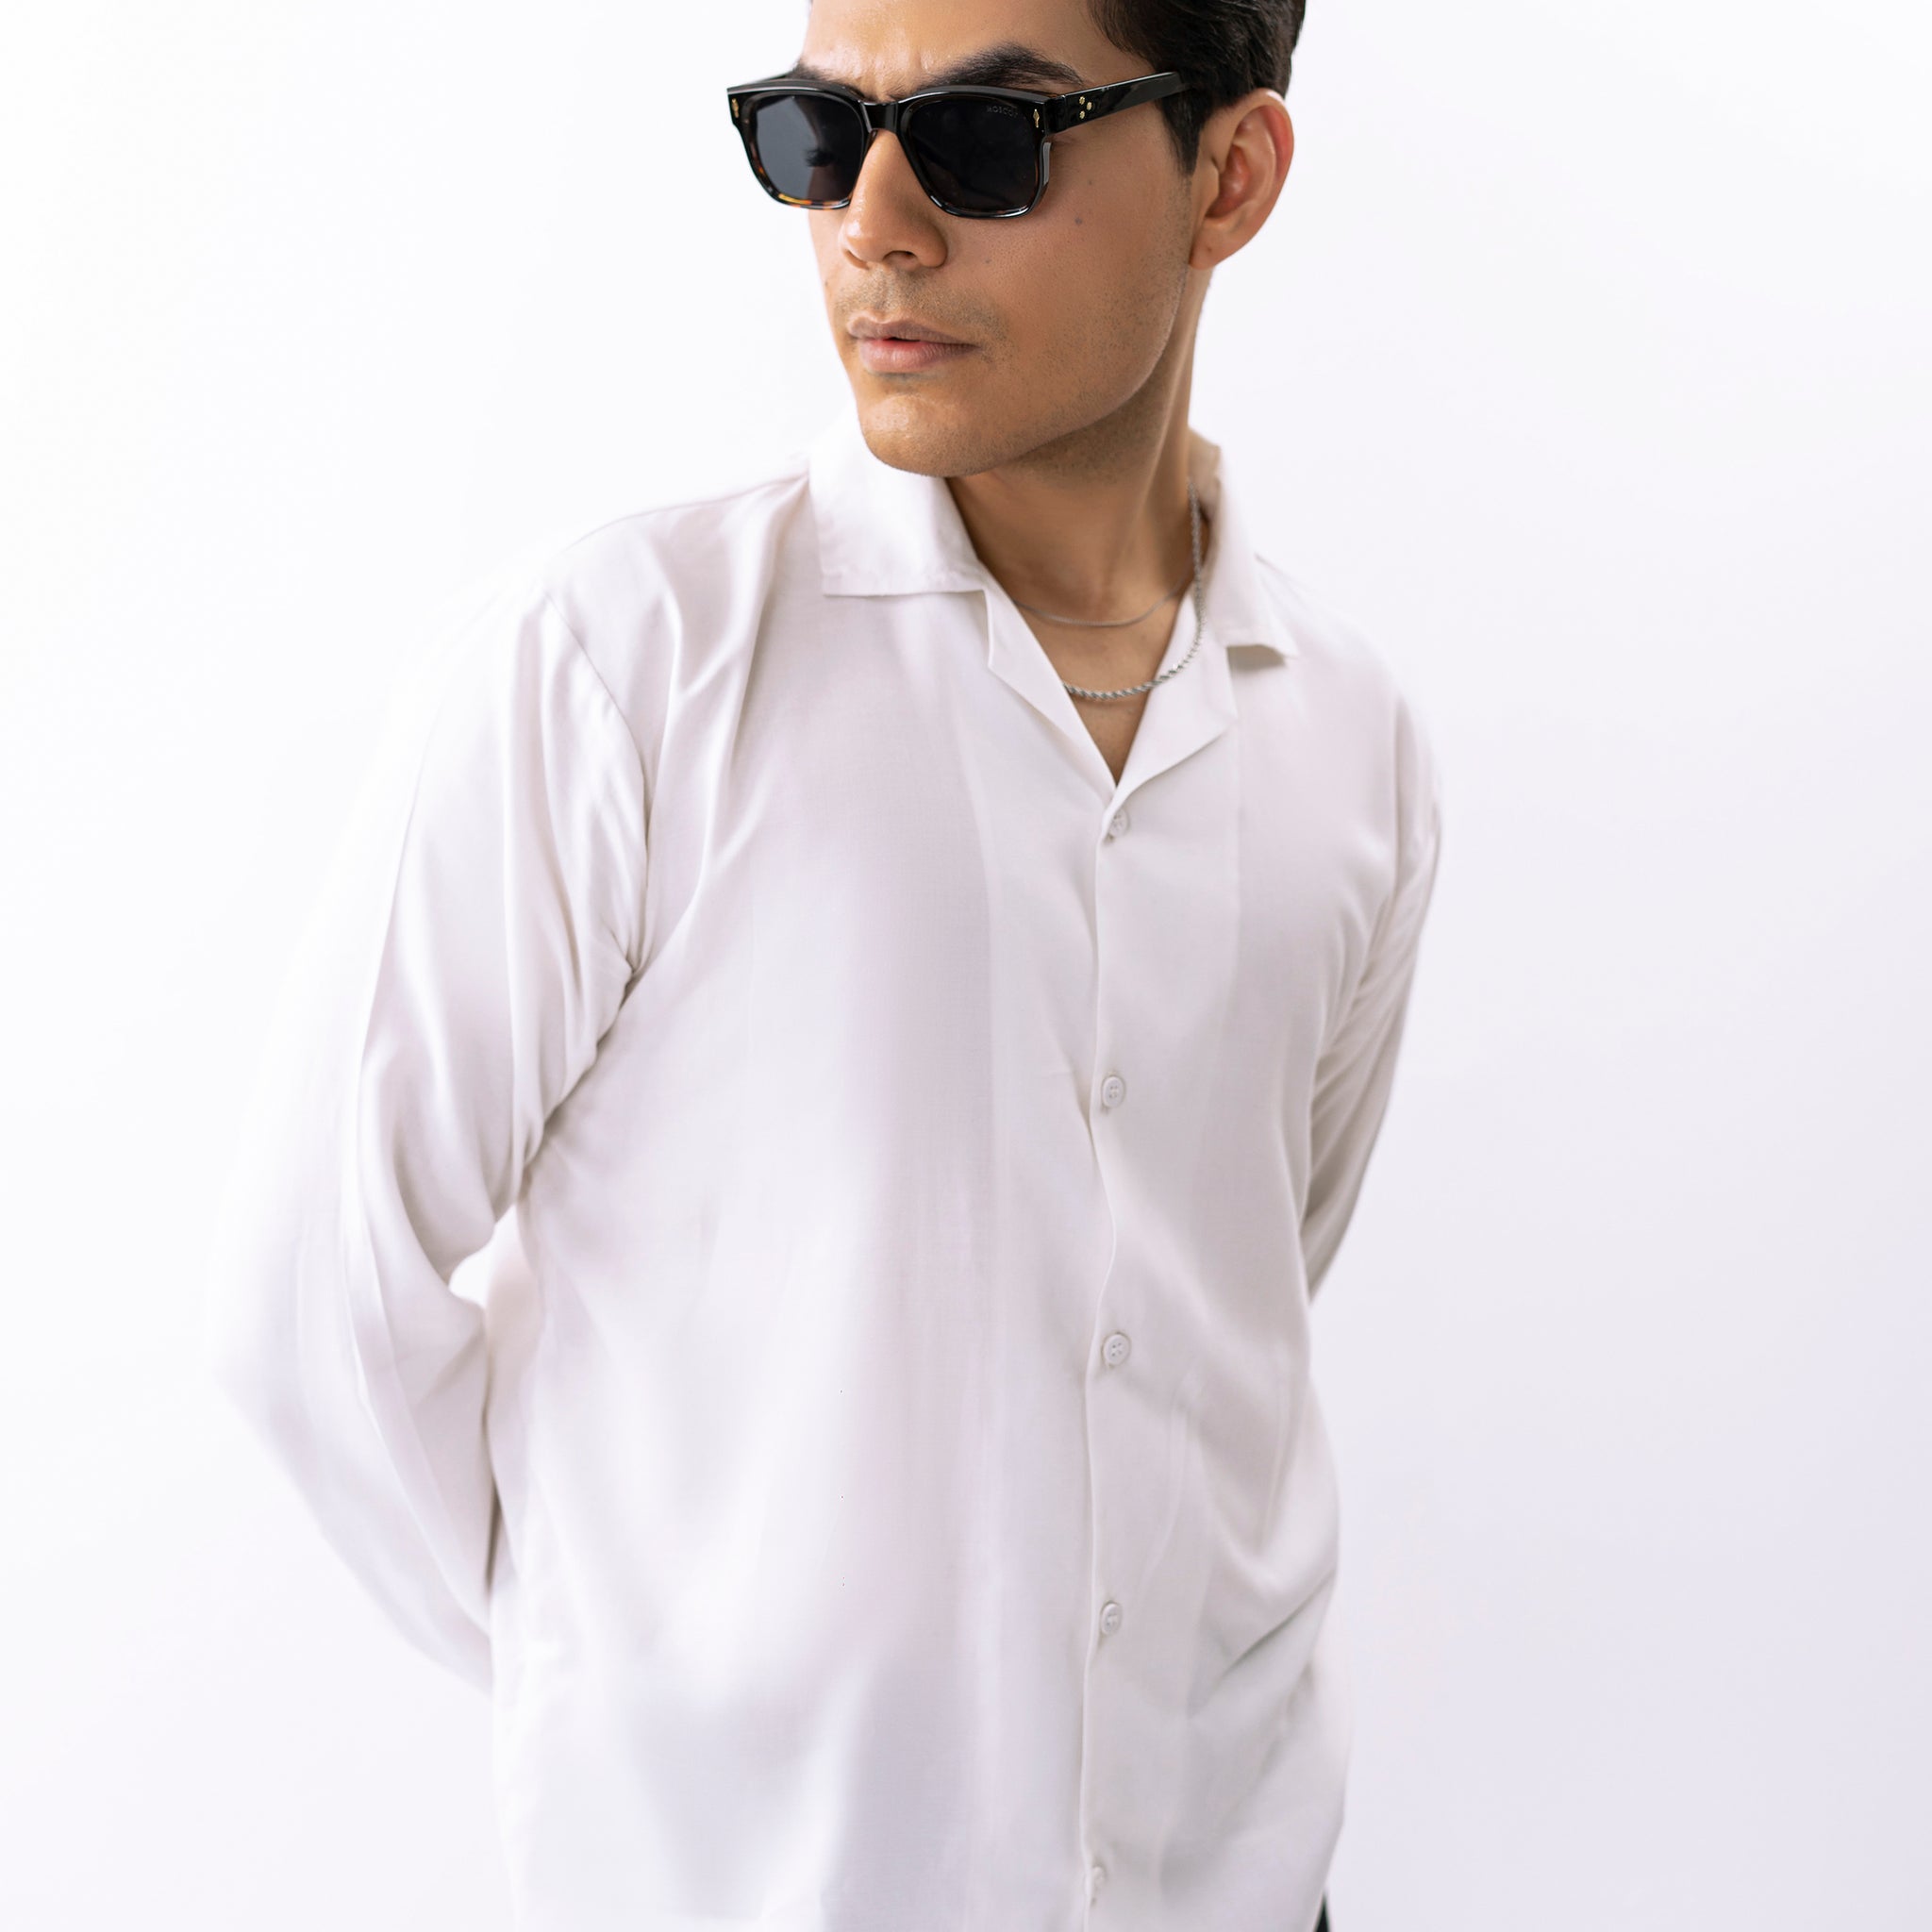 Basic White Shirt - Full sleeves